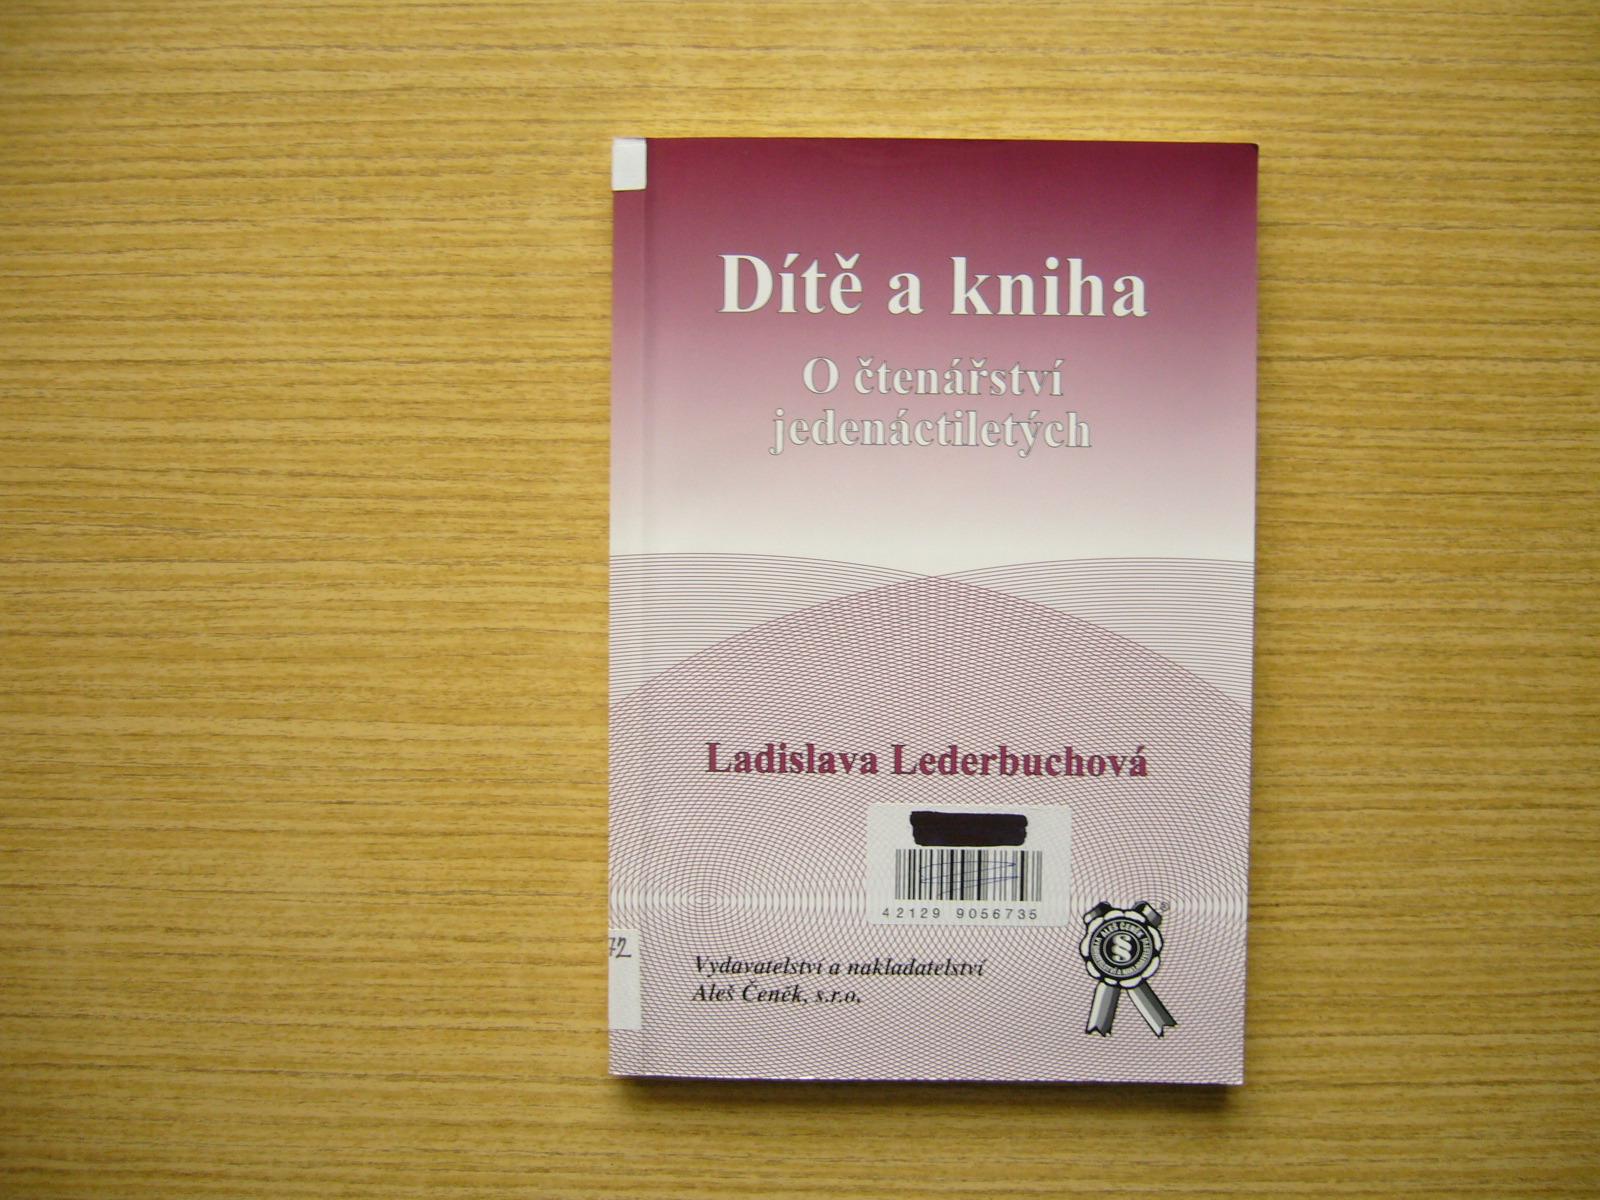 Ladislava Lederbuchová - Dieťa a kniha | 2004 -a - Knihy